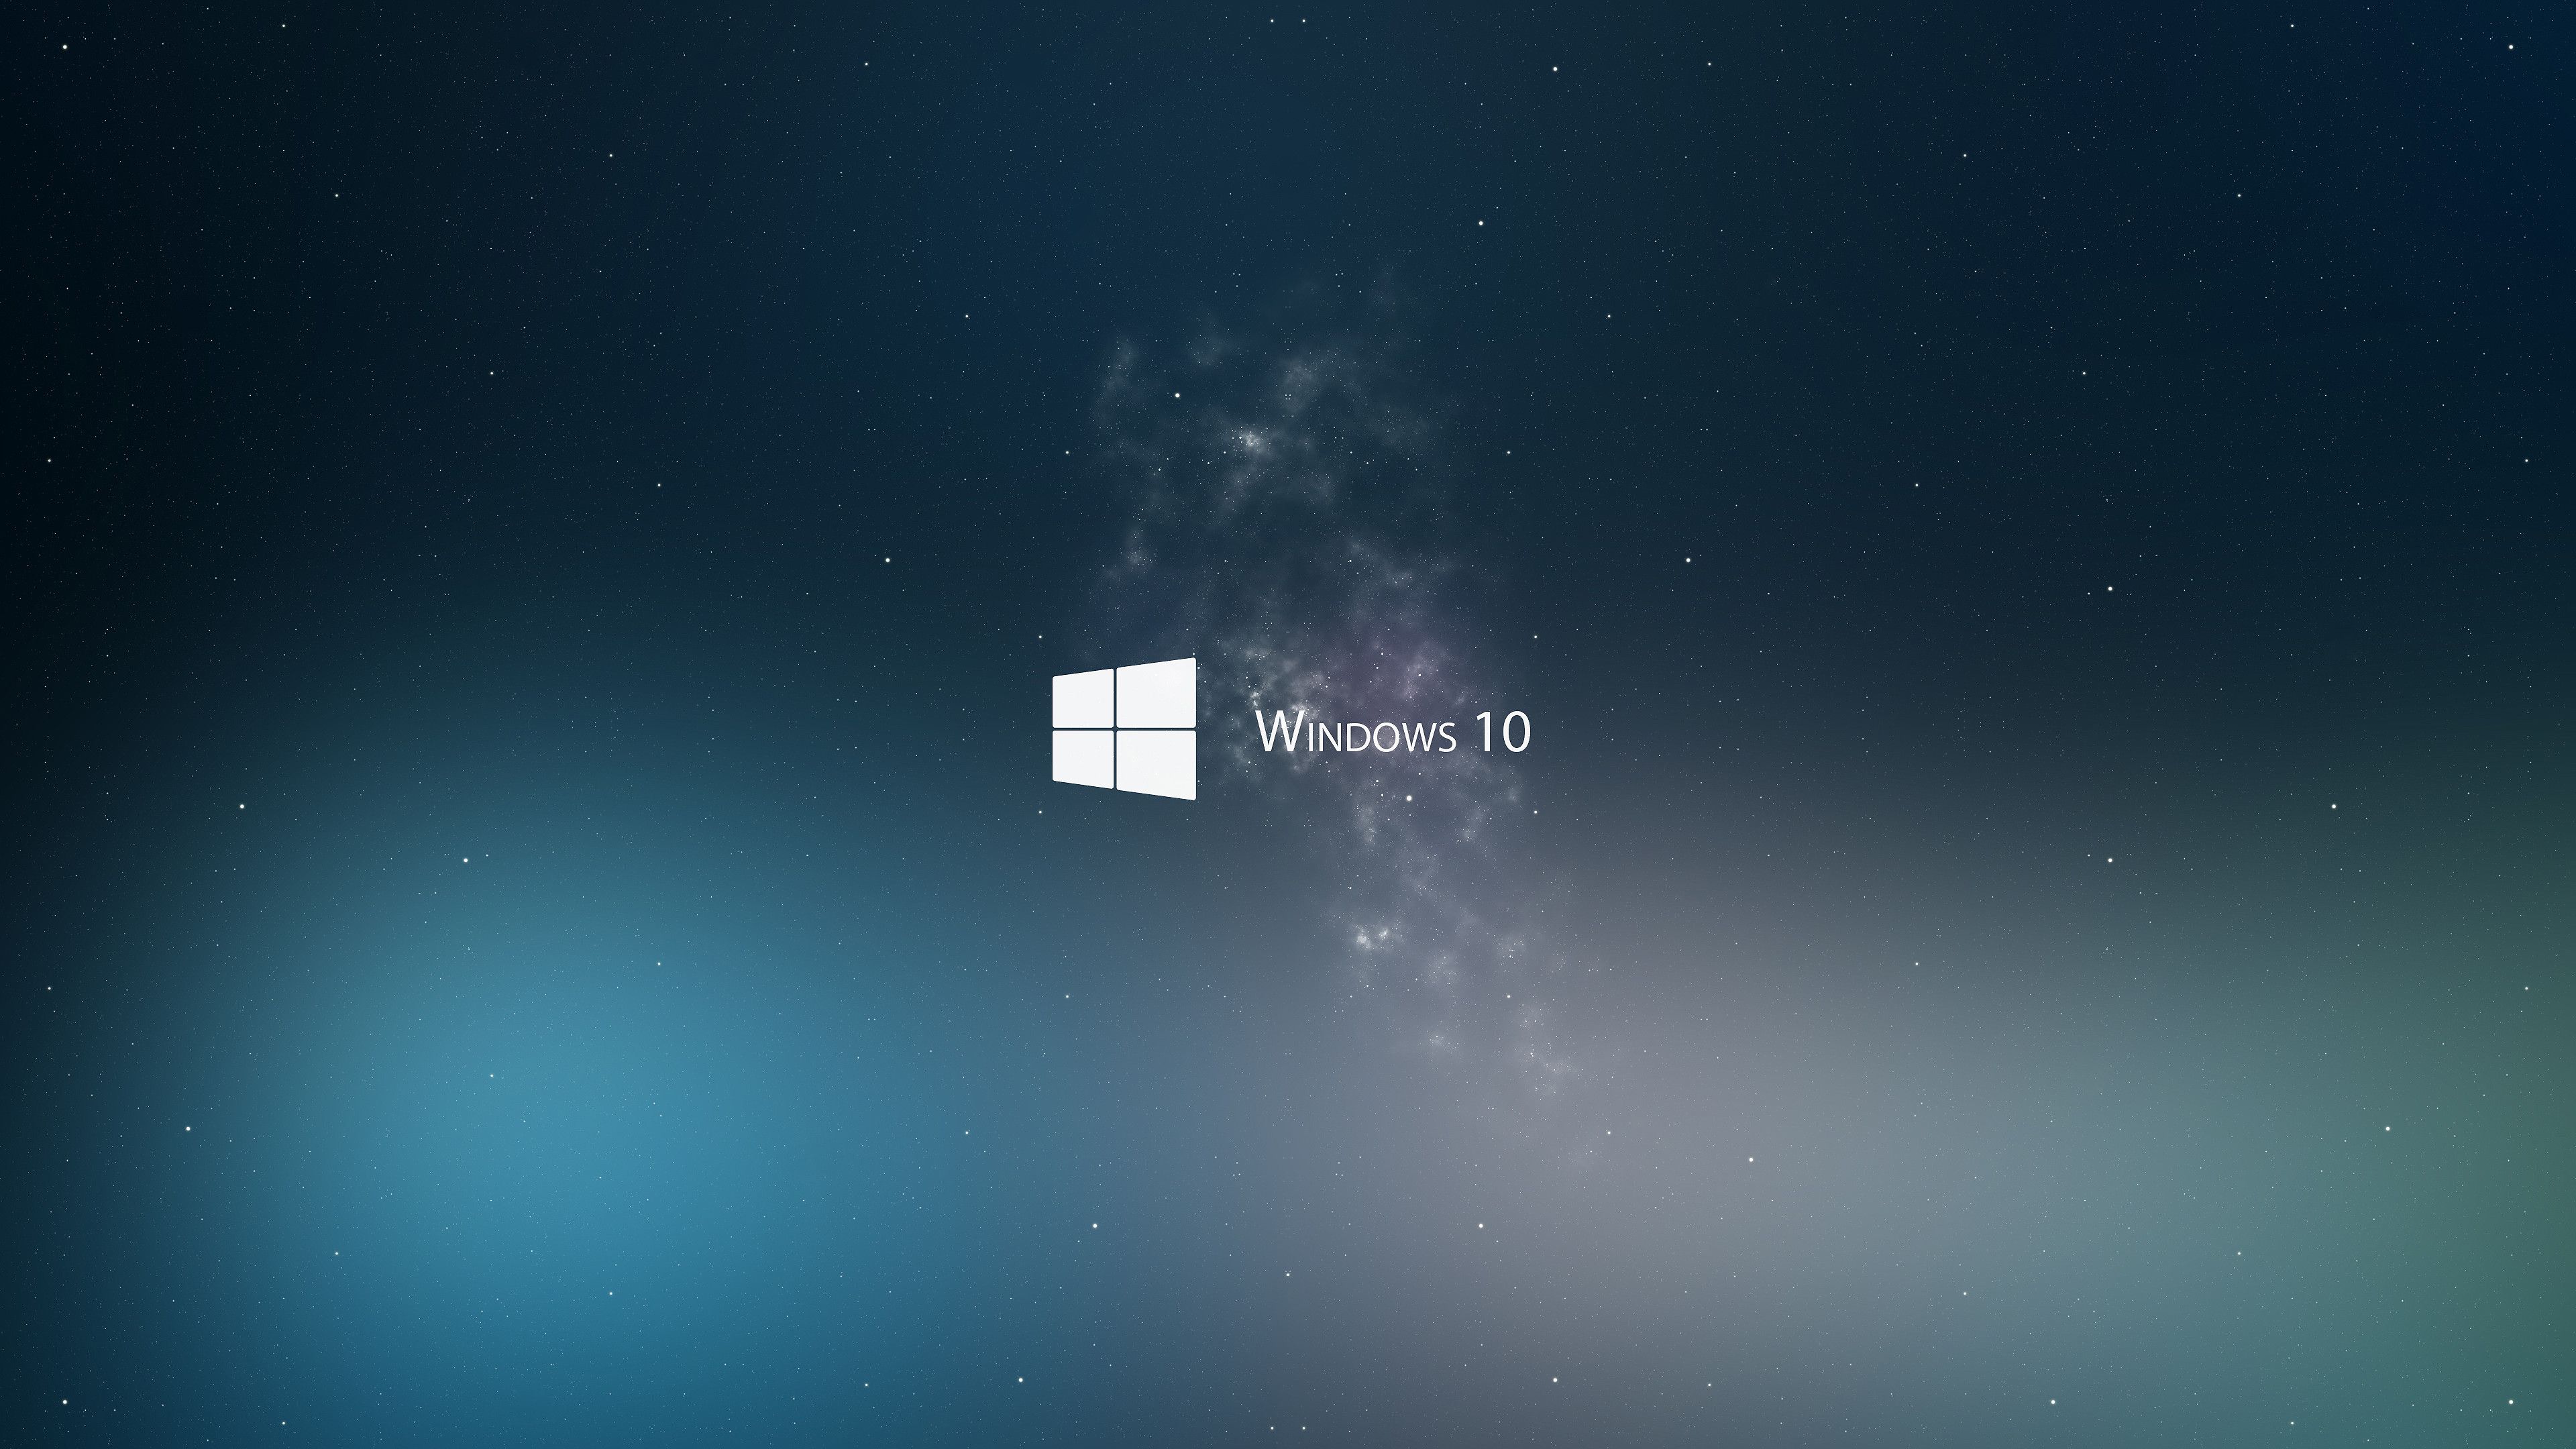 Microsoft Wallpaper Windows 10 (más de 75 imágenes)